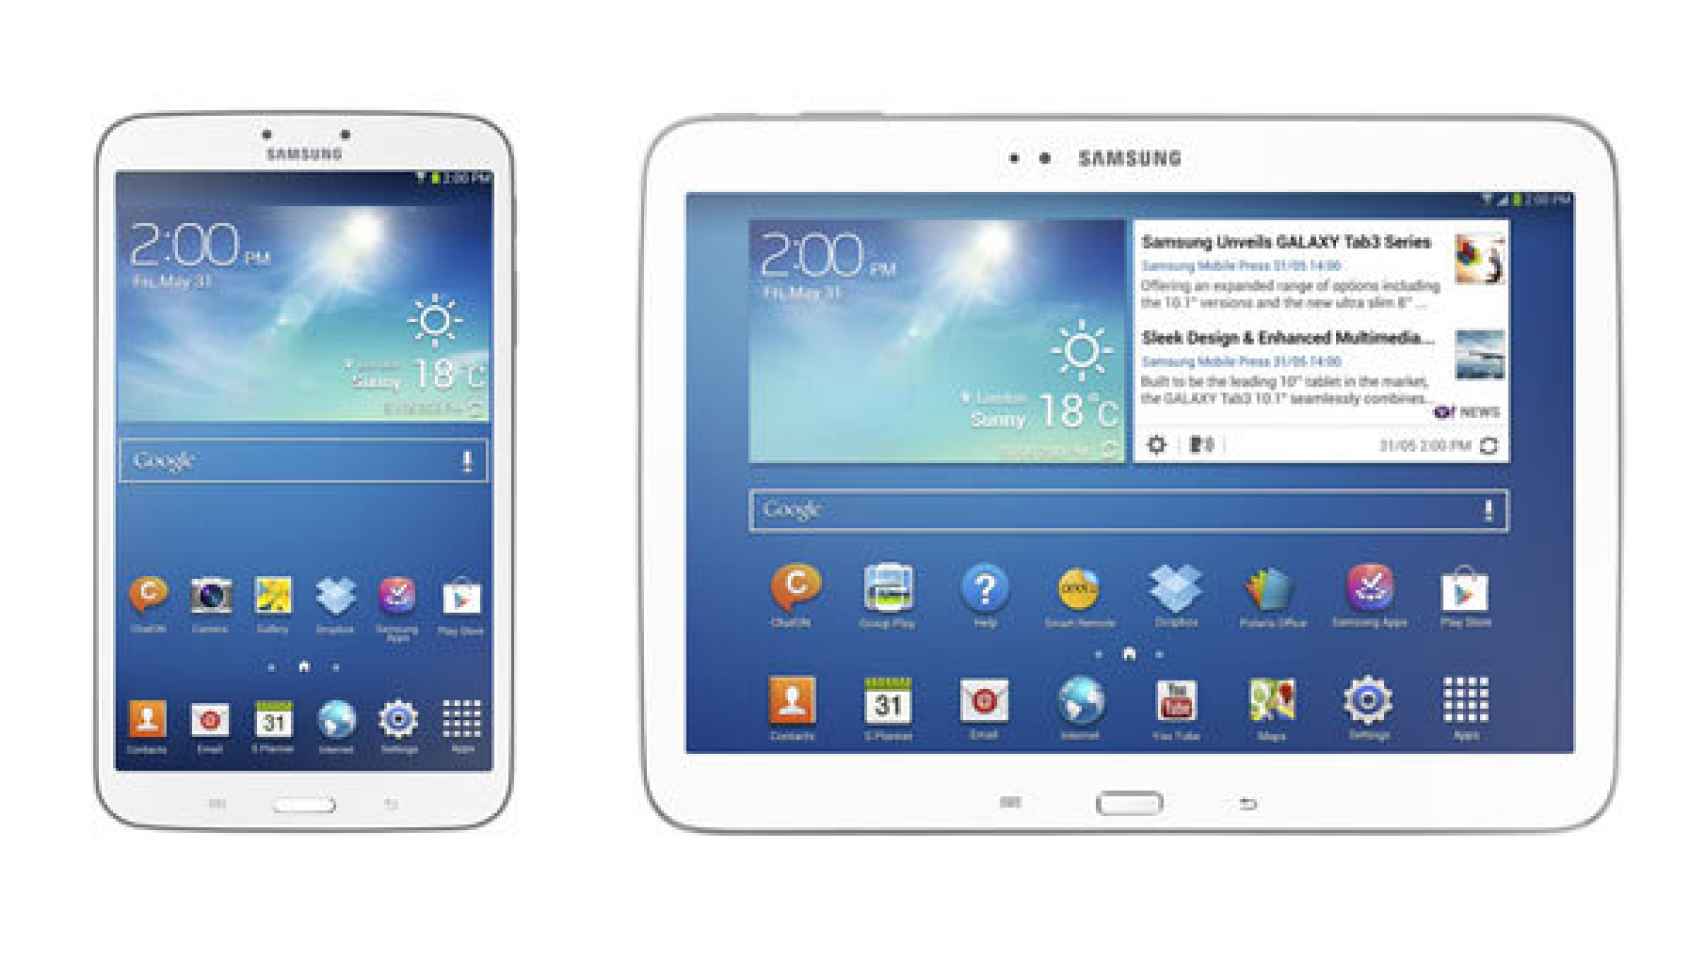 La gama de Samsung Galaxy Tab 3 se amplía con modelos de 8 pulgadas y 10.1 pulgadas.